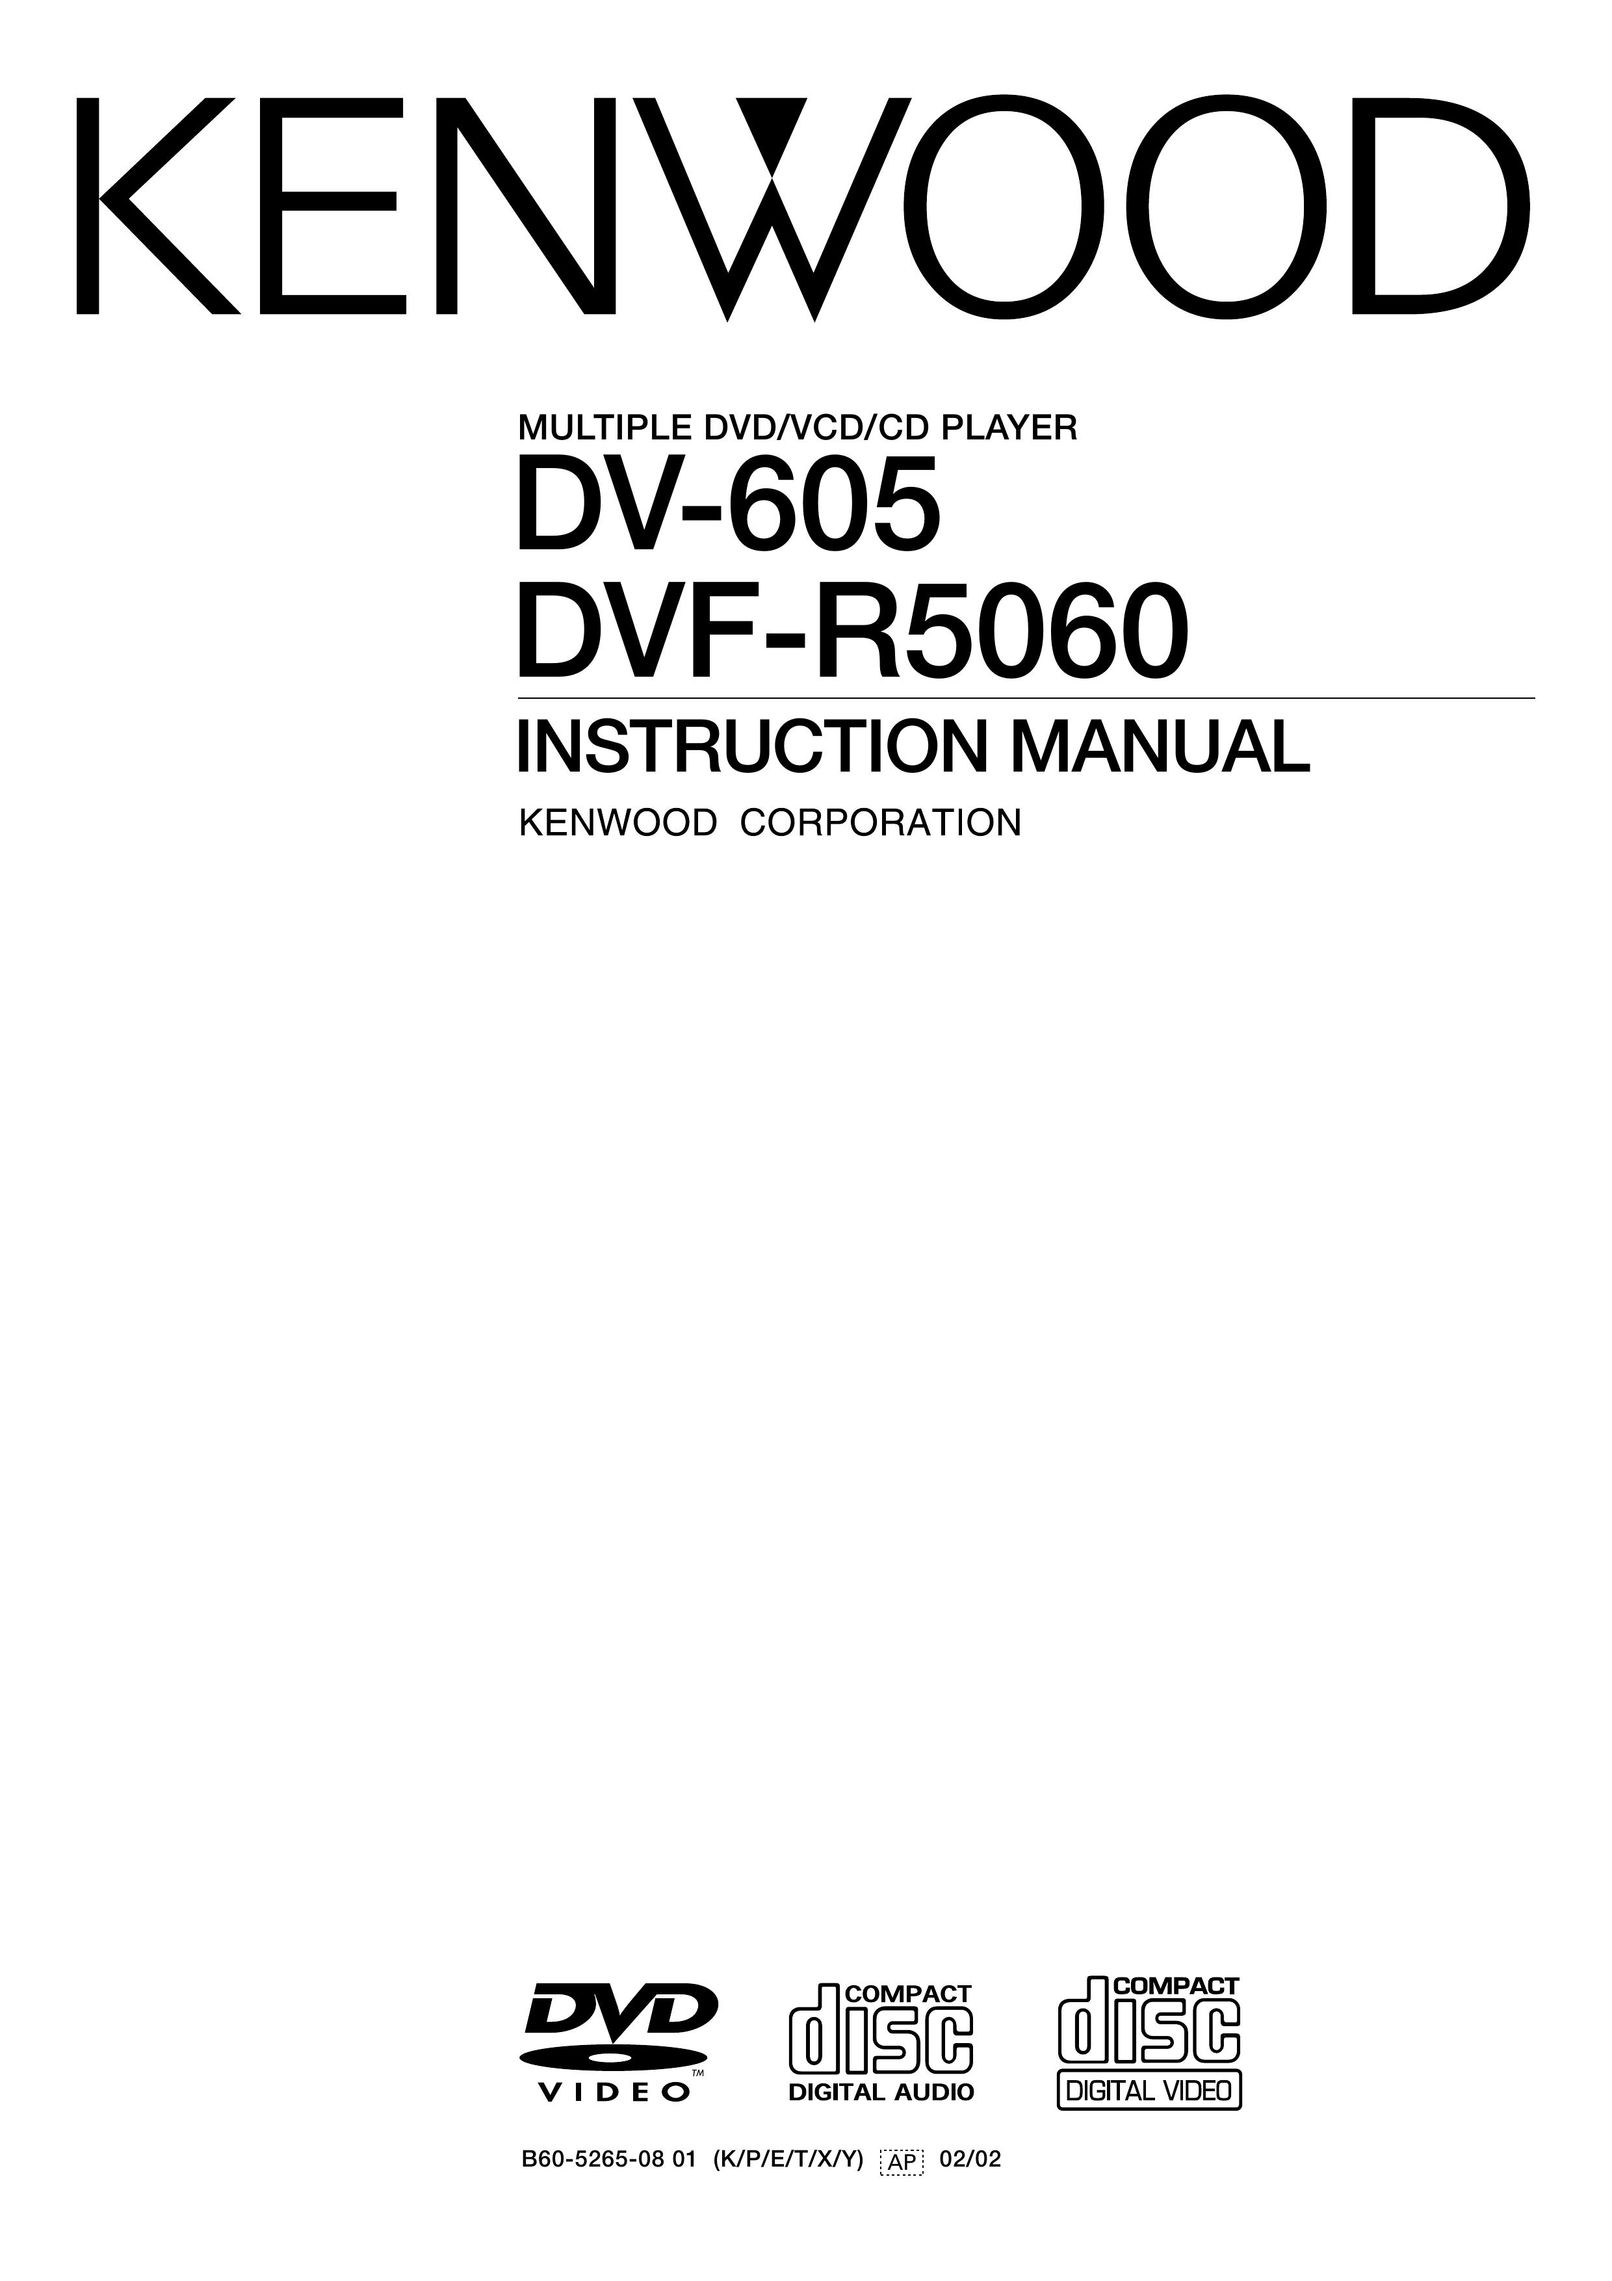 Kenwood DVF-R5060 DVD Player User Manual